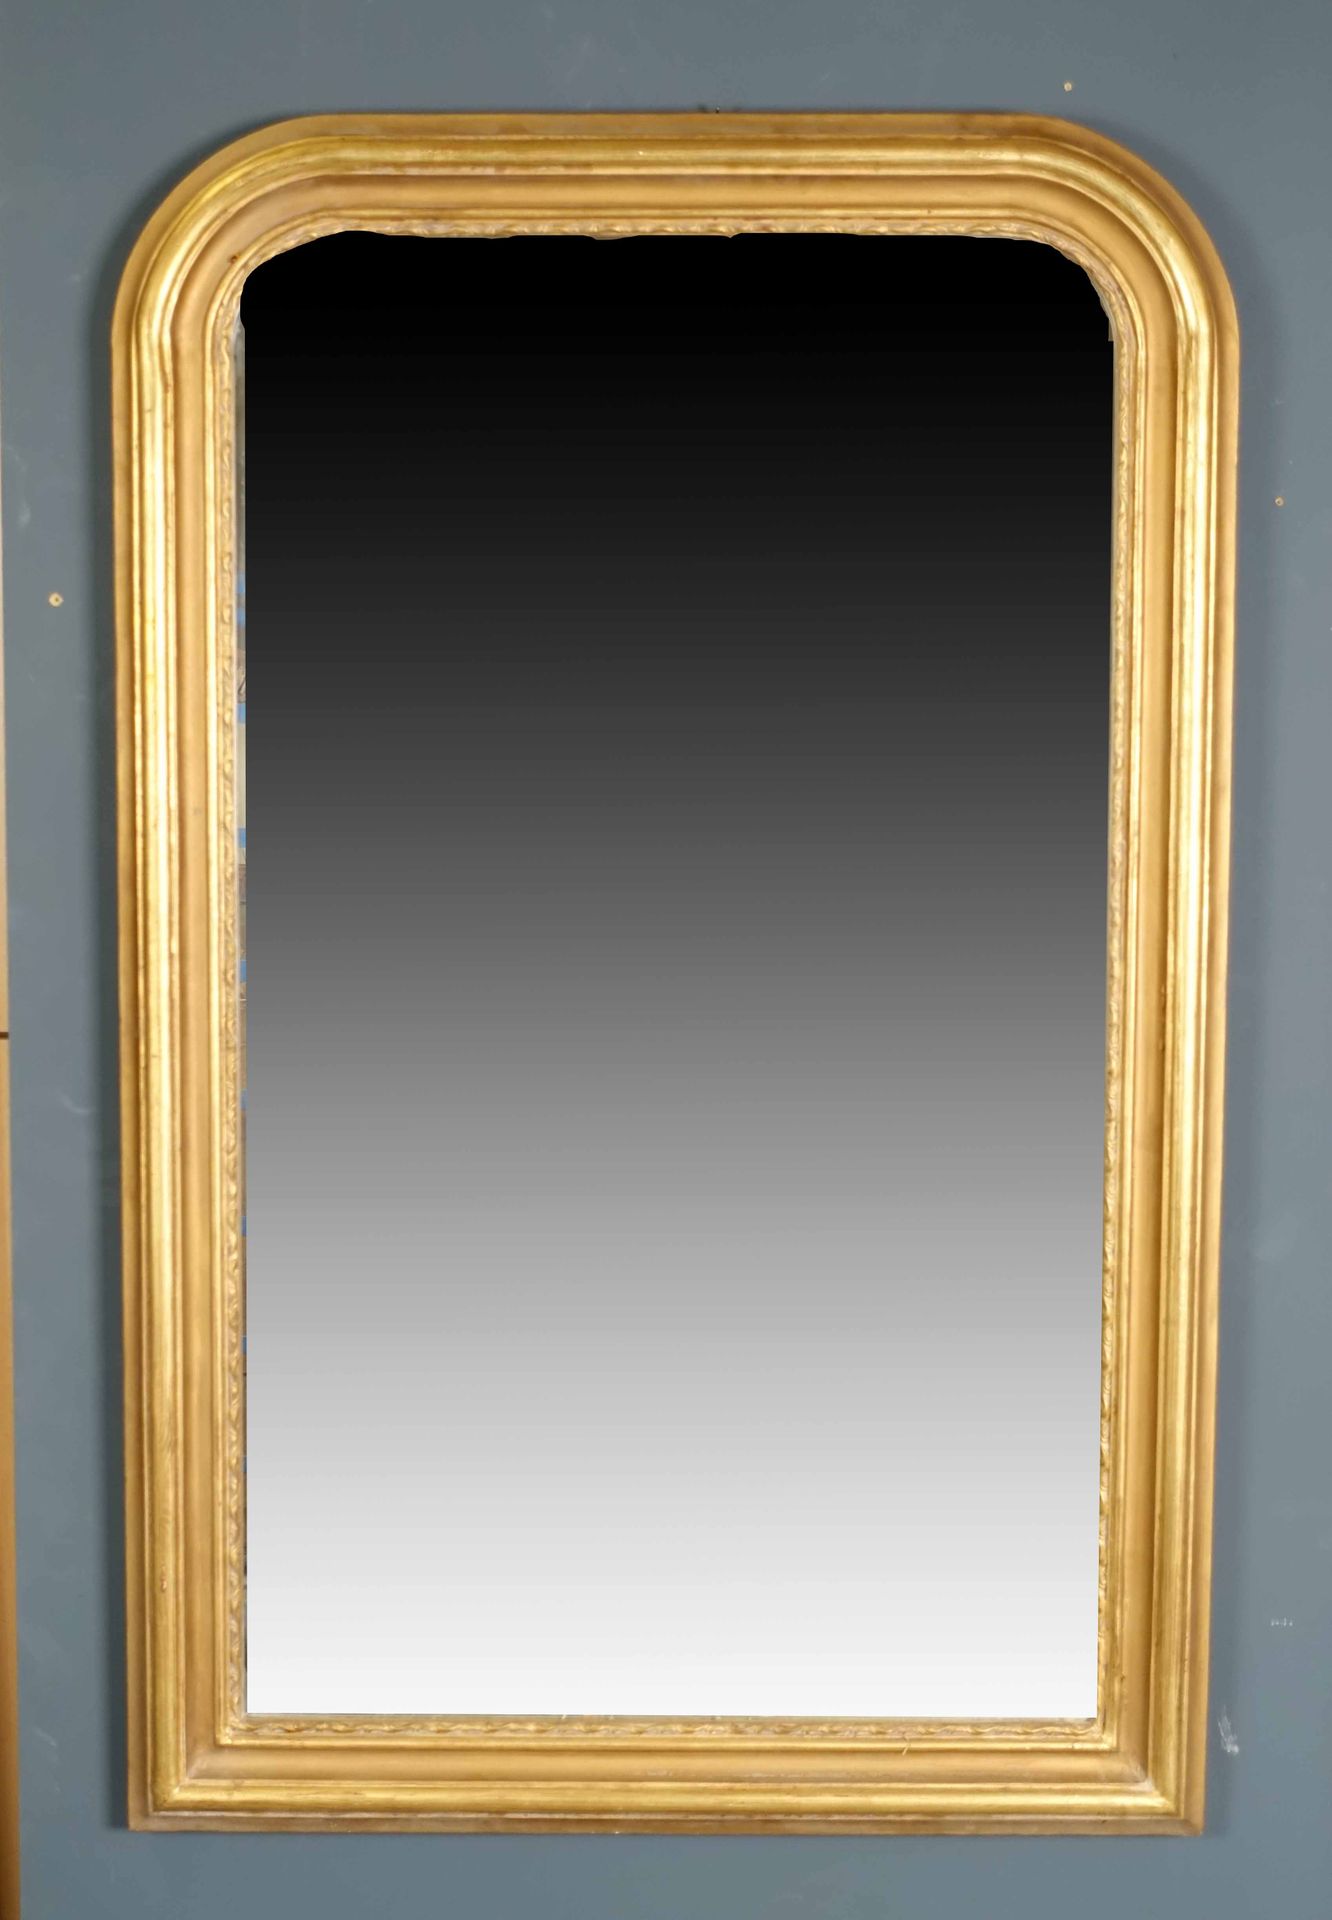 Miroir de Cheminée. Telaio modellato. Legno dorato. Dimensioni: 137 x 91 cm.